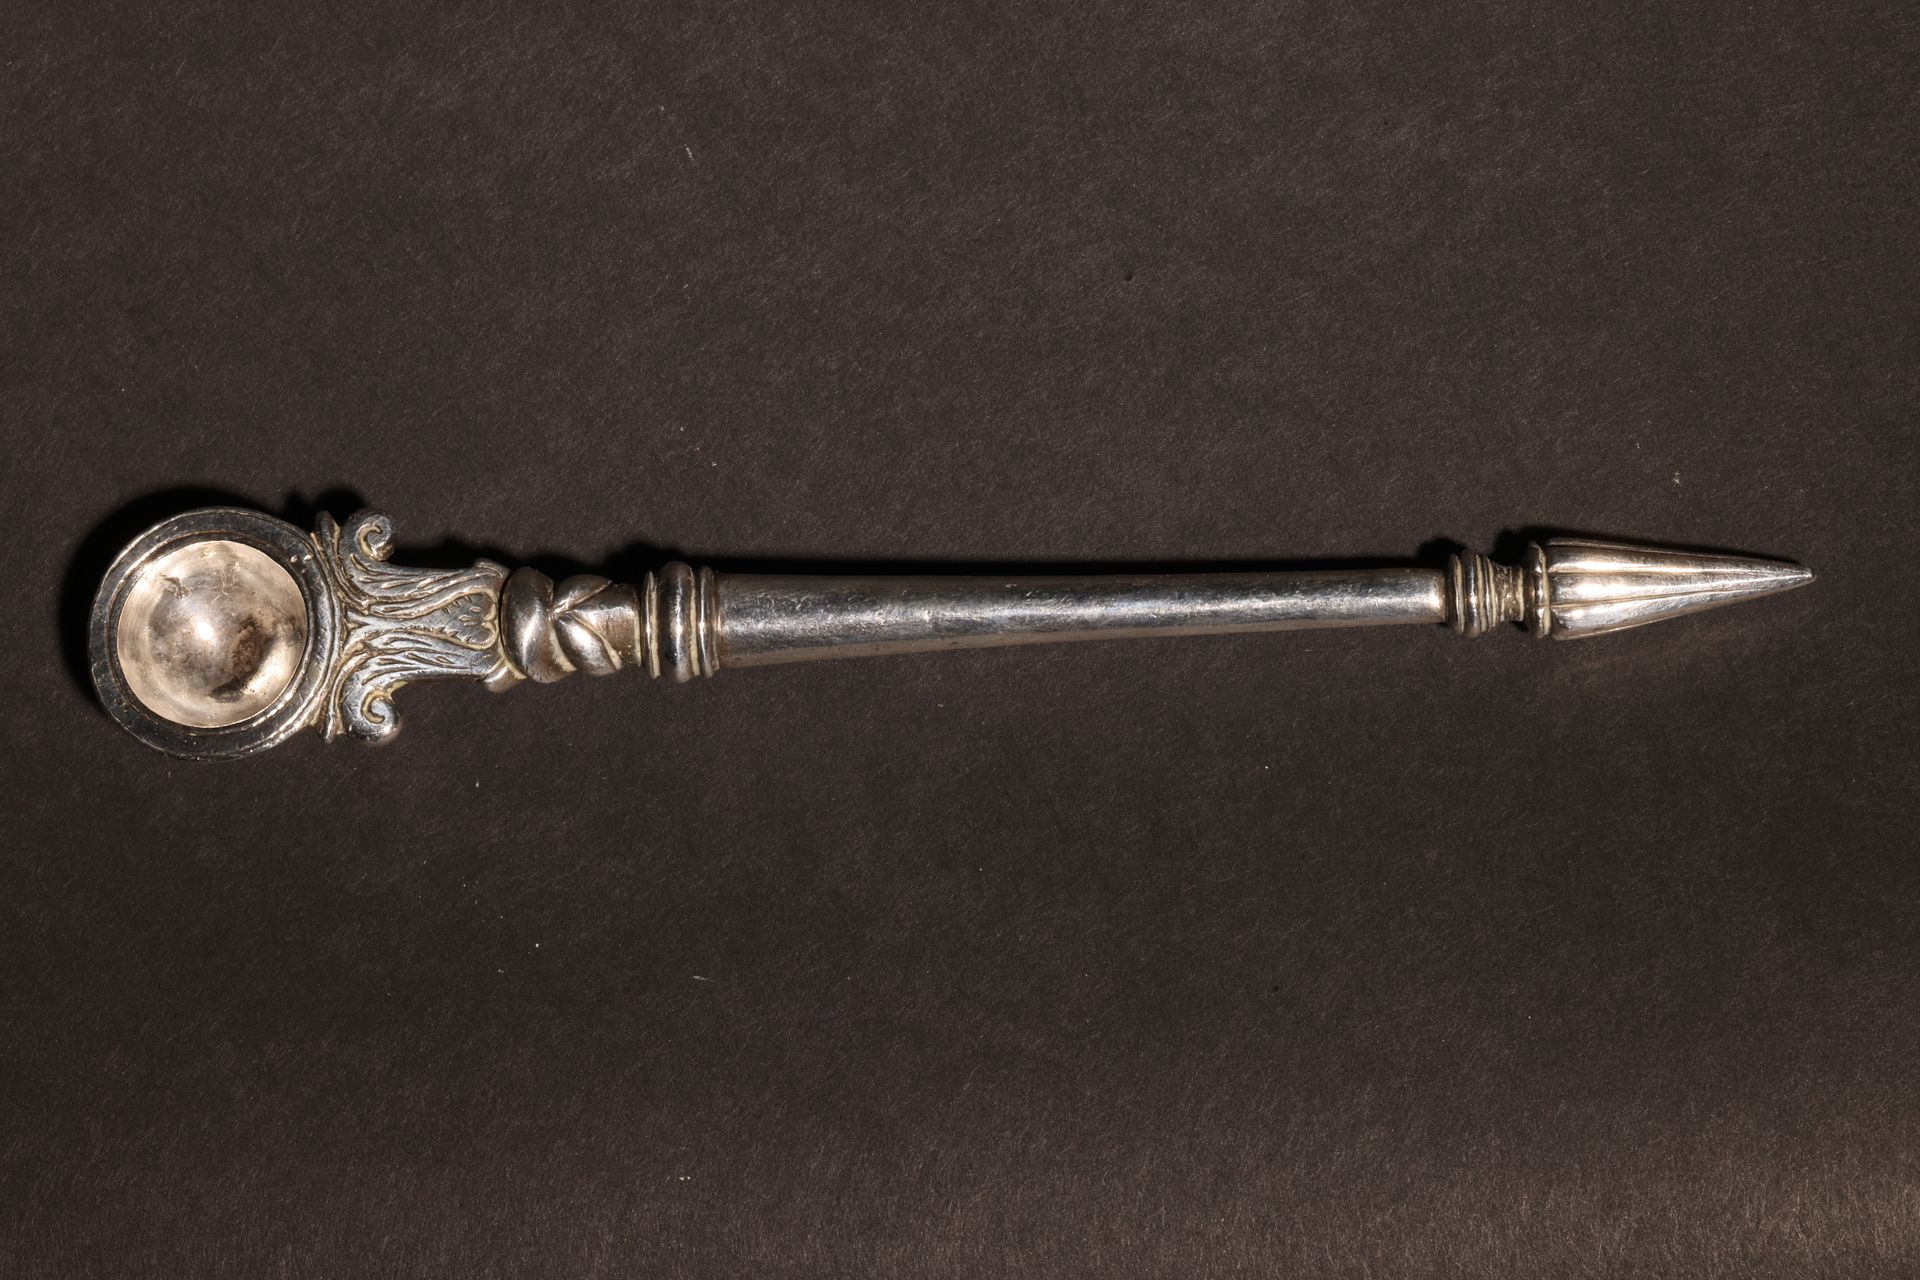 An Antique South Asian Opium Spoon 古老的南亚鸦片汤匙尺寸。约6英寸长